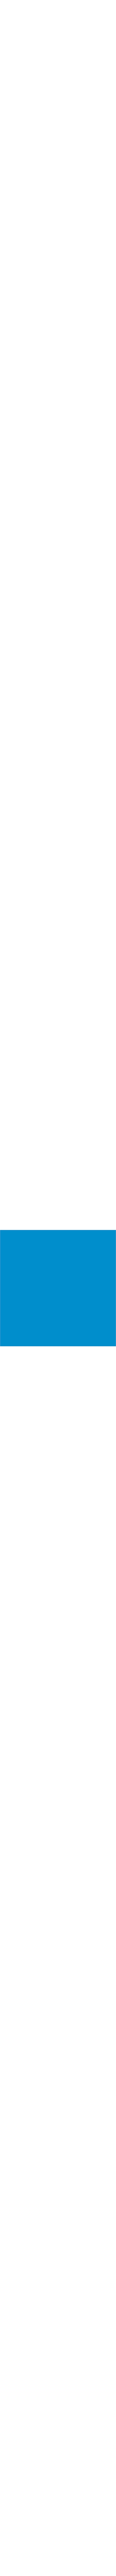 80.123 Bleu lumineux en 0.61m (référence arrêtée) prix net